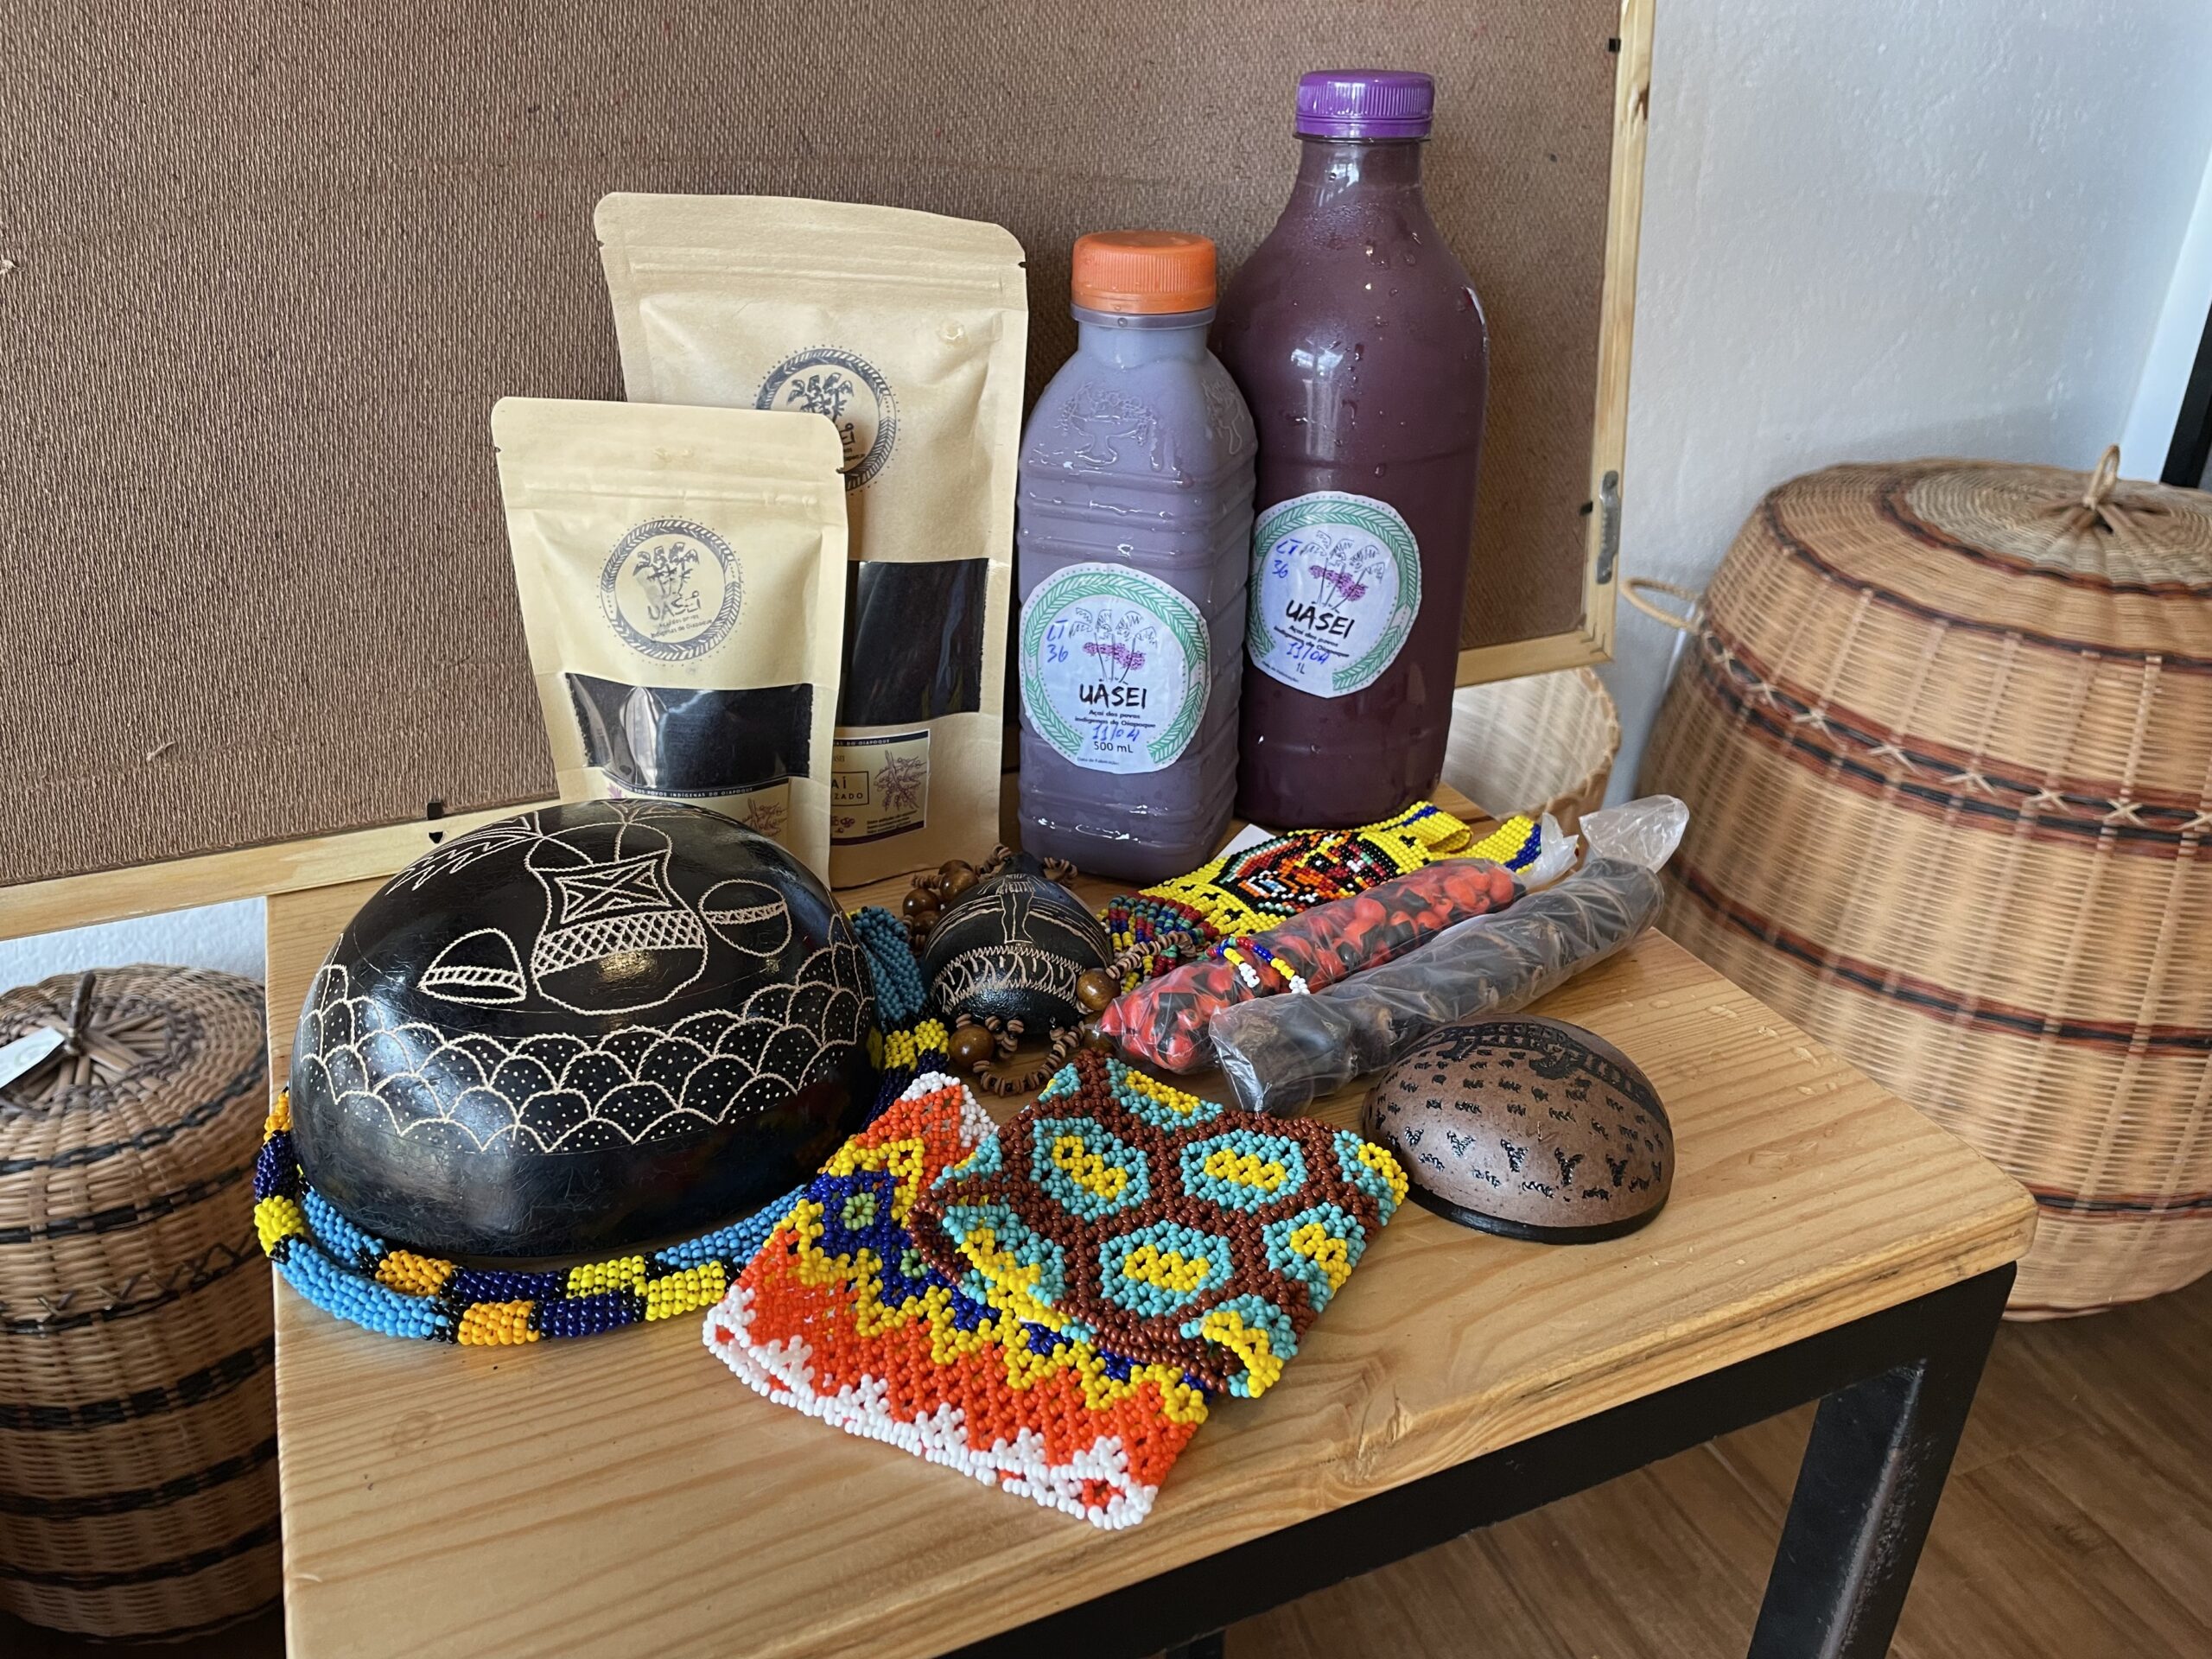 produtos indígenas vendidos no Empório Uasei. Cuia desenhada, açaí em polpa e em pó e artesnatos de miçanga